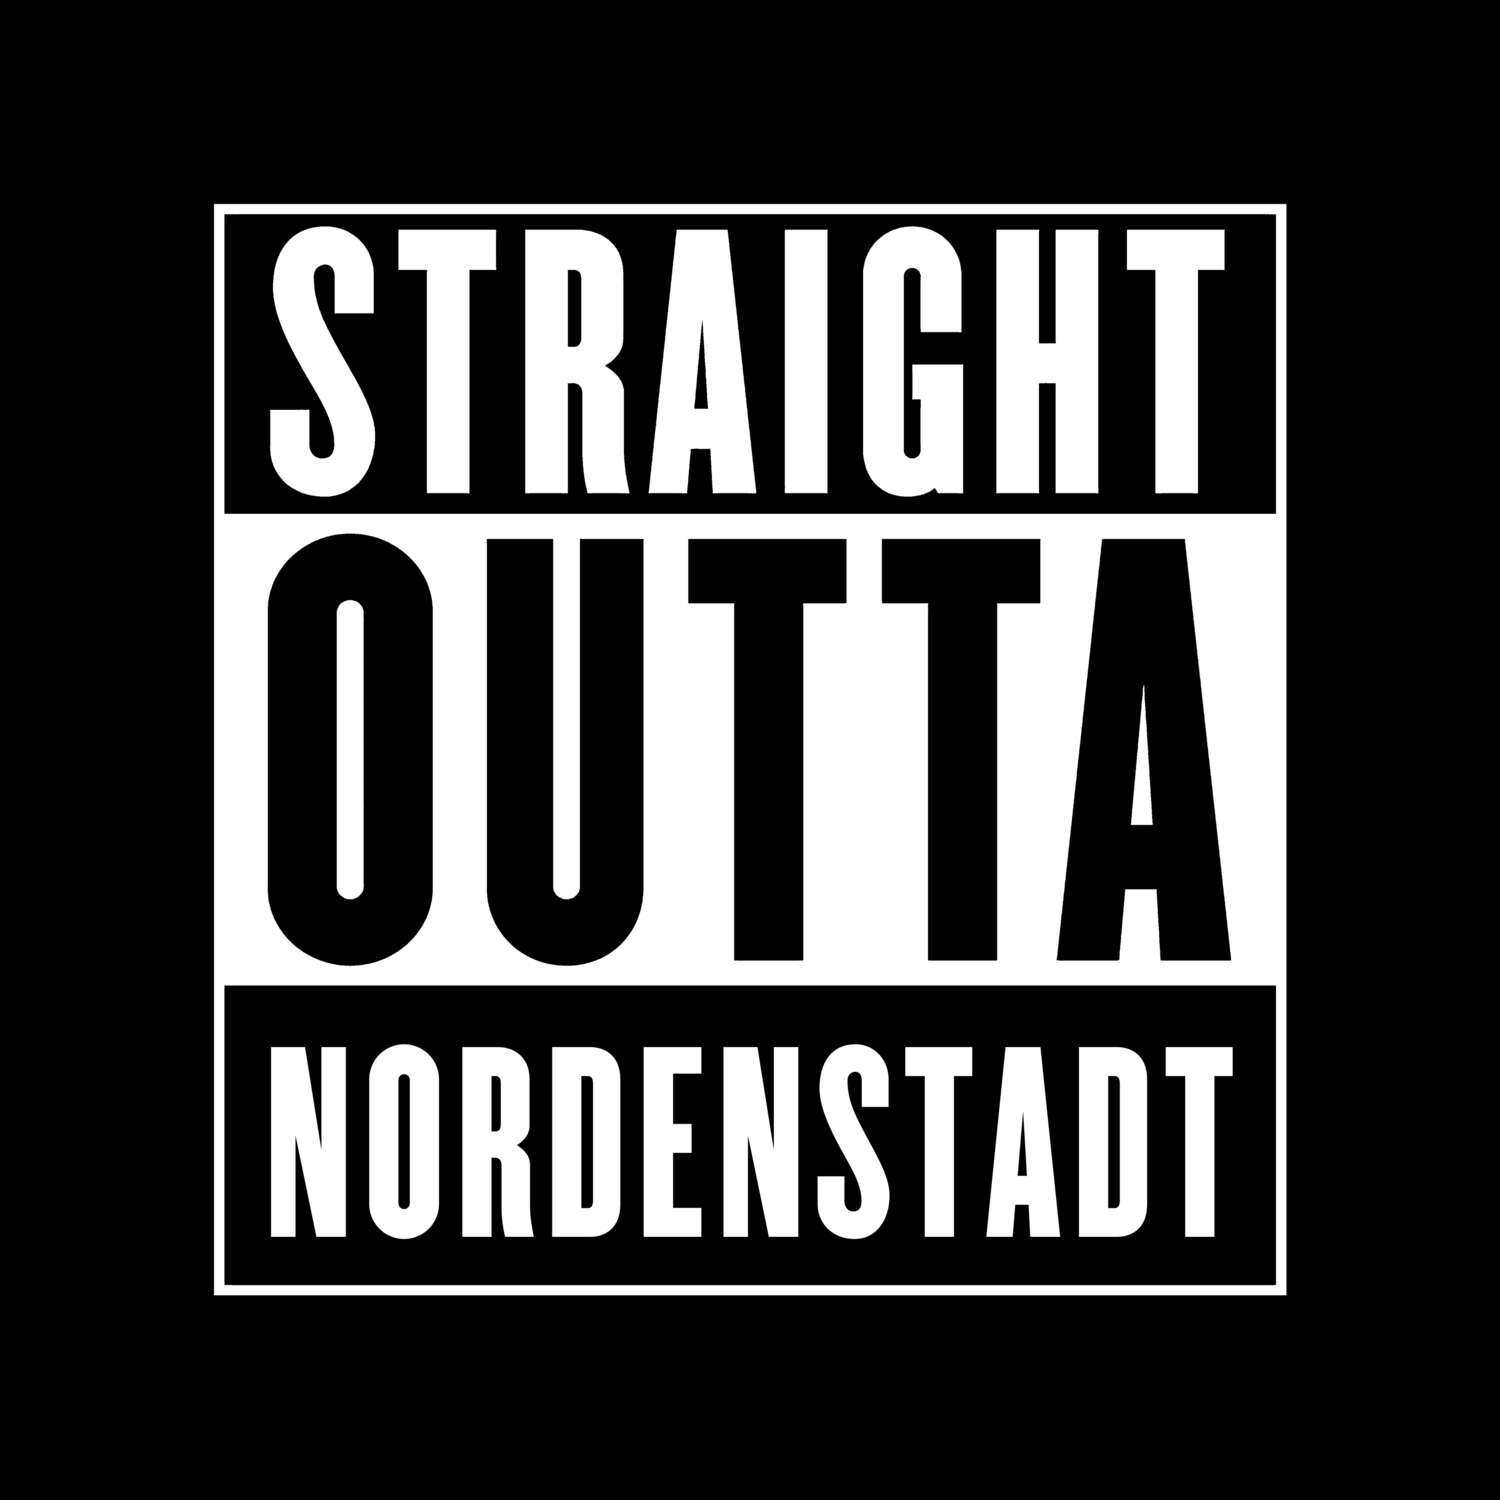 Nordenstadt T-Shirt »Straight Outta«